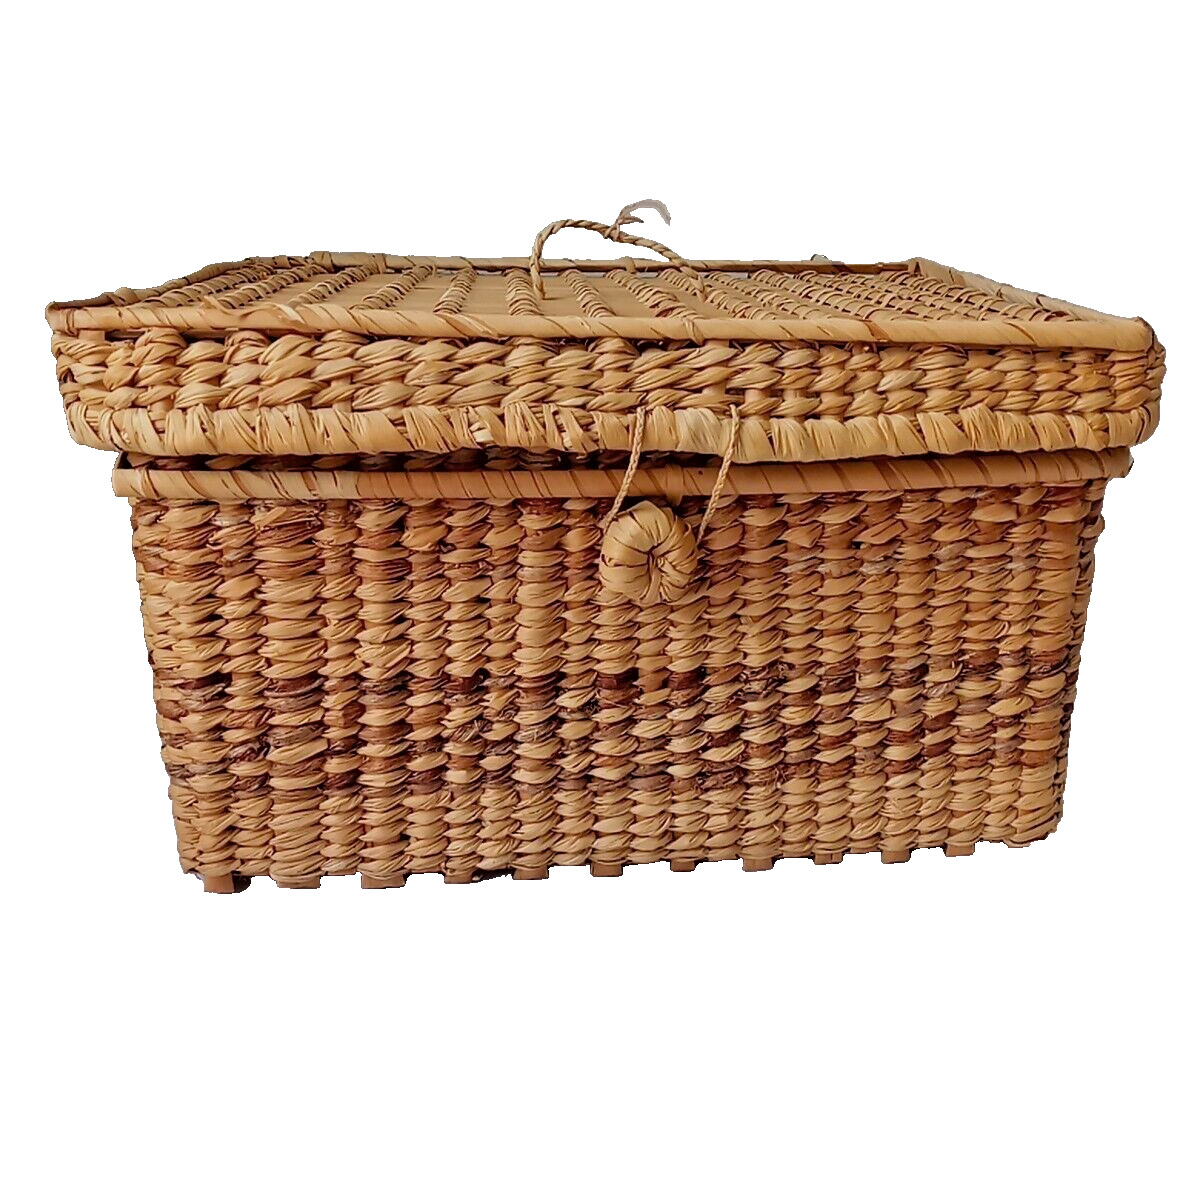 Antique Lidded Woven Rectangular Grass Basket 2 tone Grass Loop & Button Closure